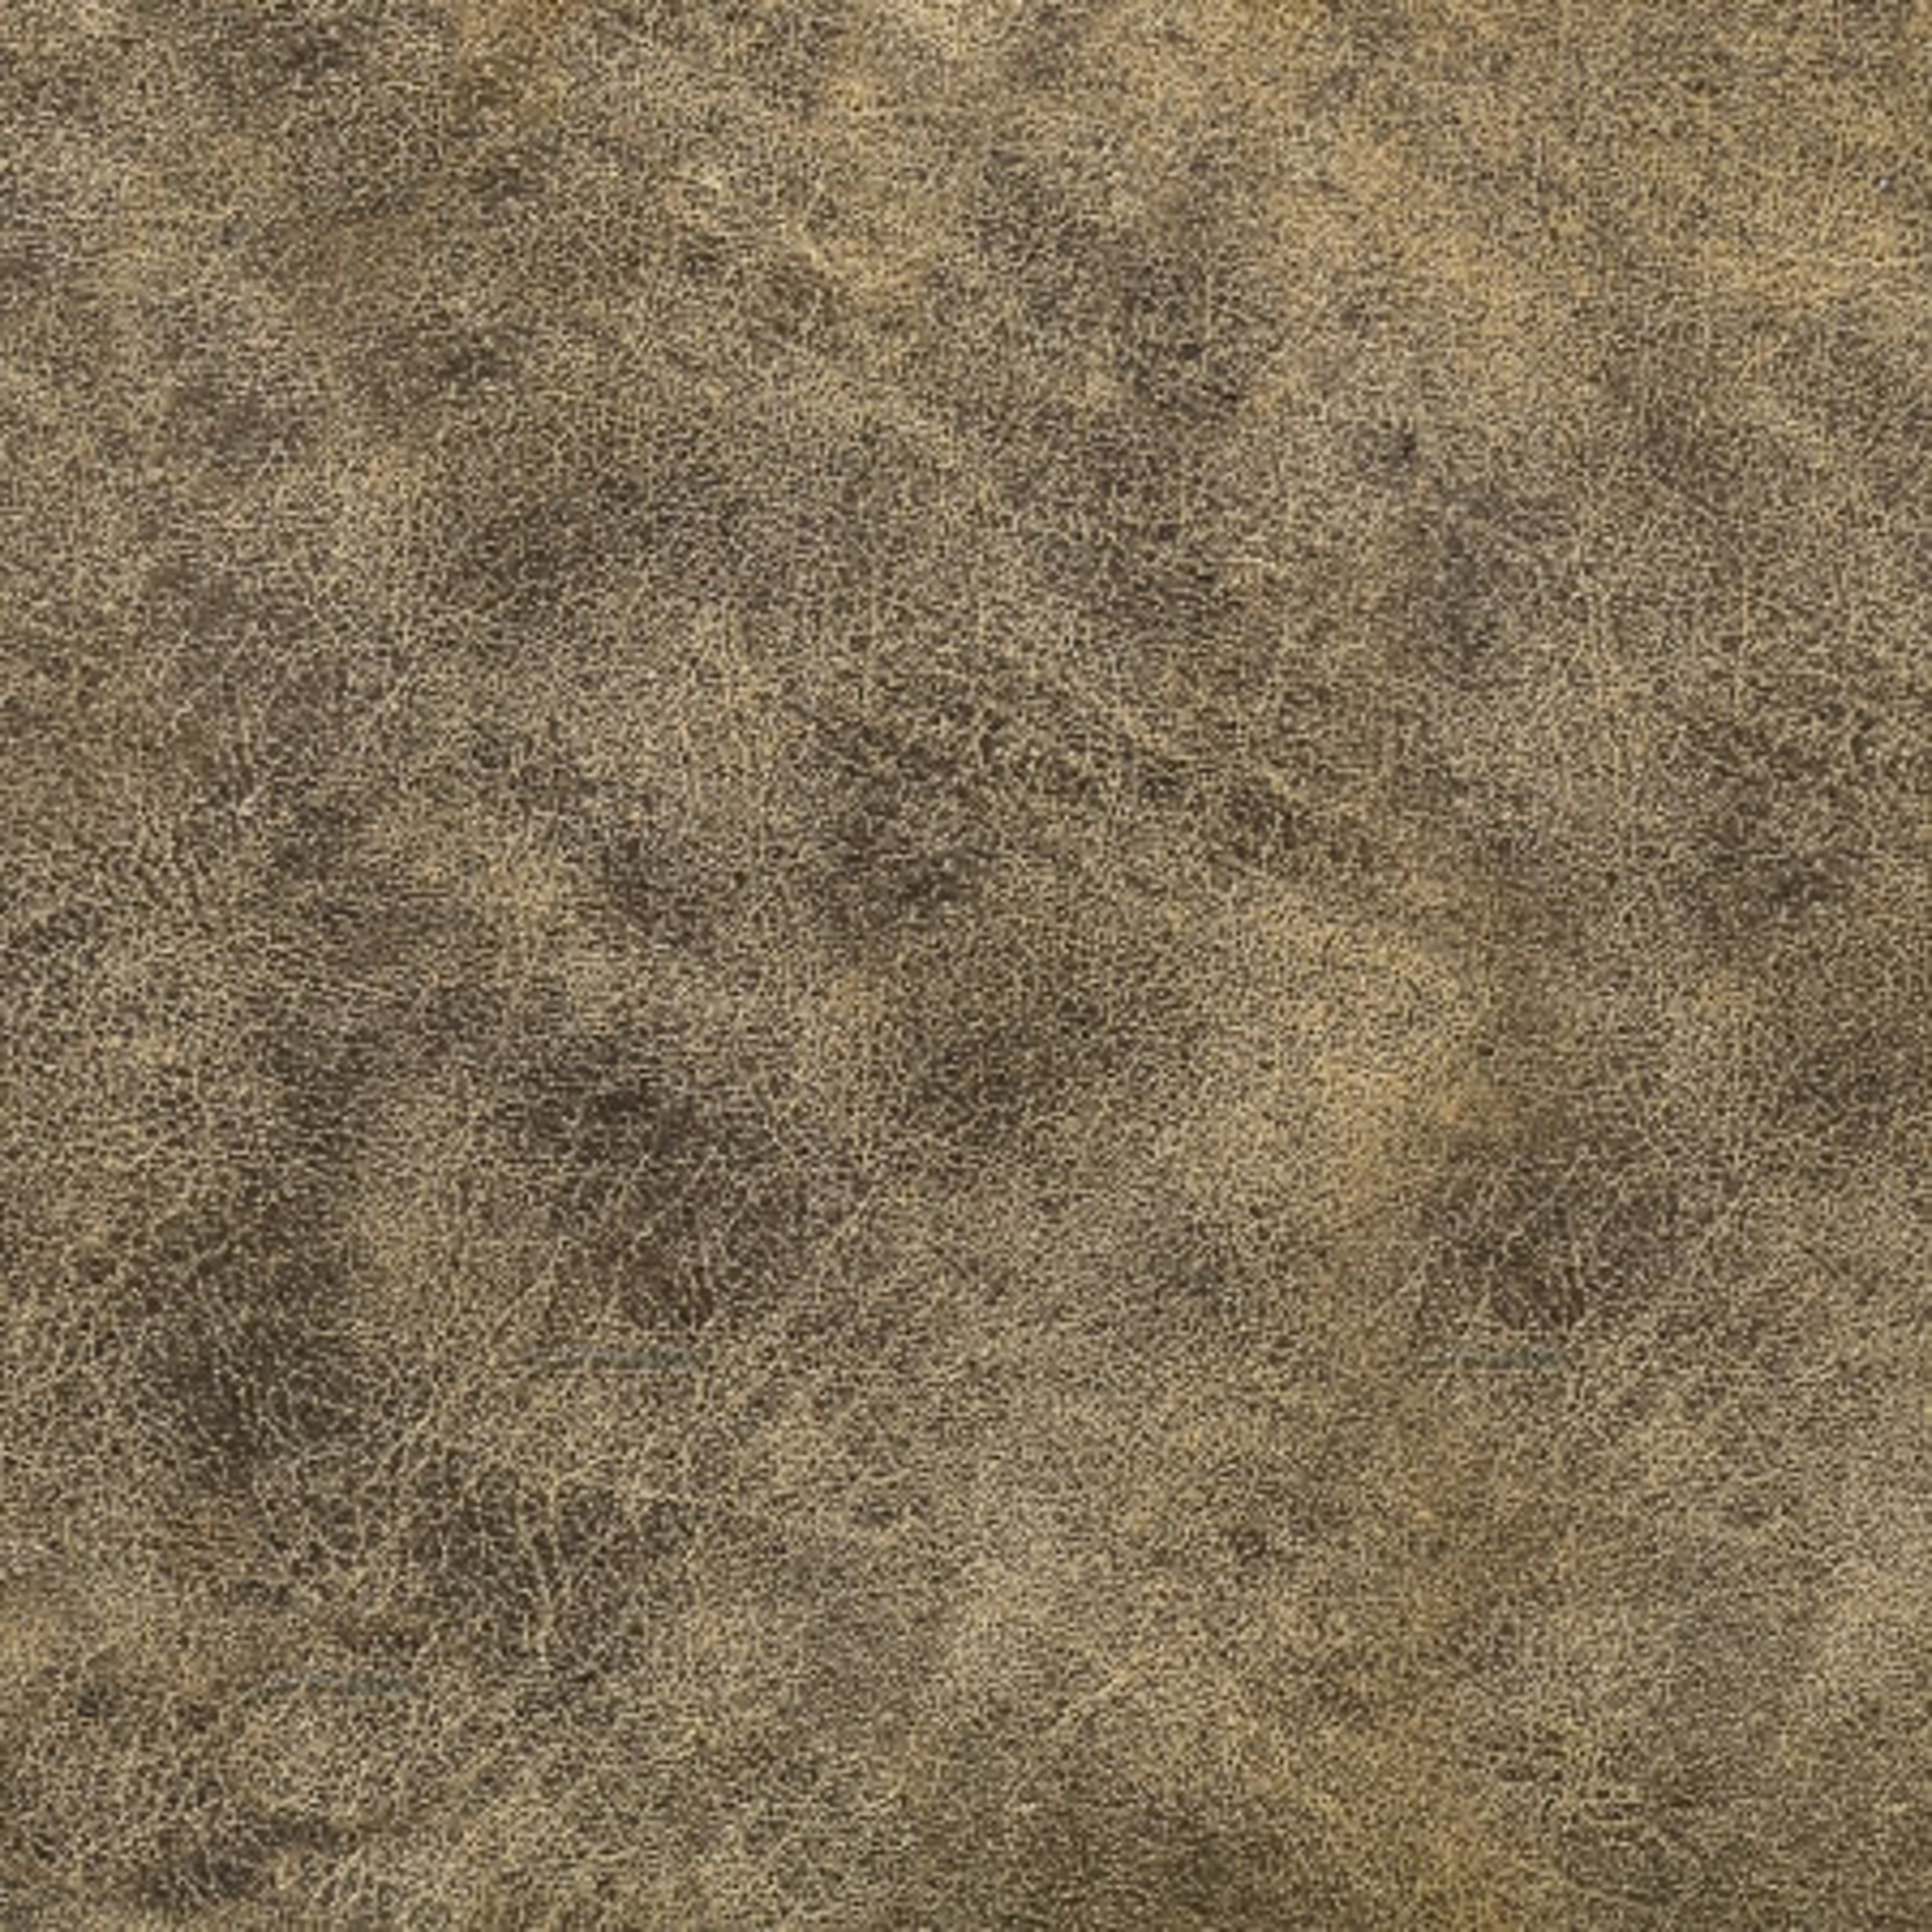 Detailný pohľad na eko kožu v zemitej farbe.